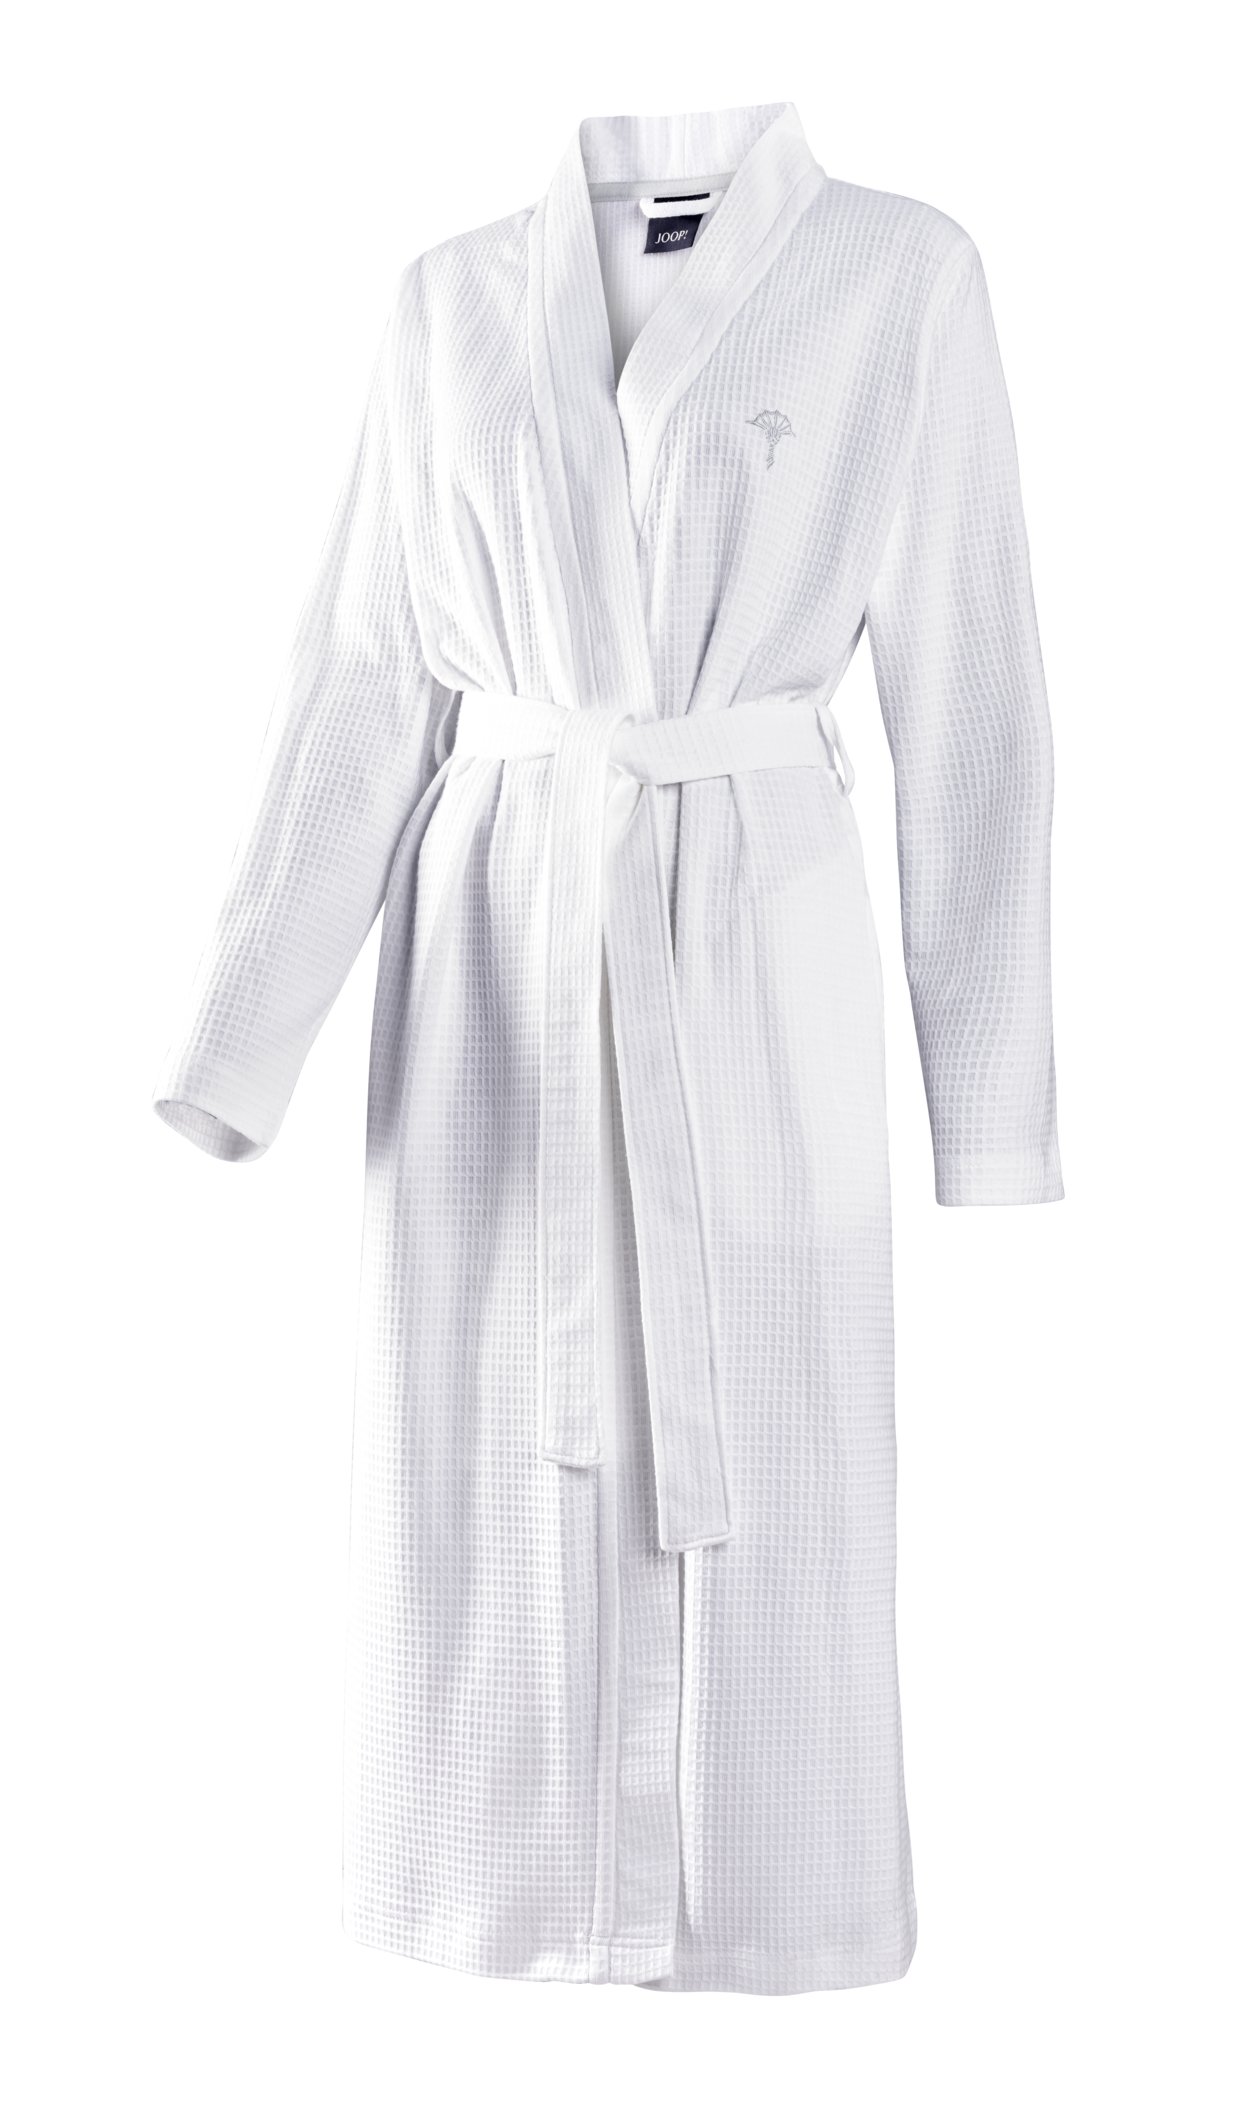 JOOP! Damen Kimono uni Piqué 1657-600 L 44/46 Weiß Baumwolle Waffelpique